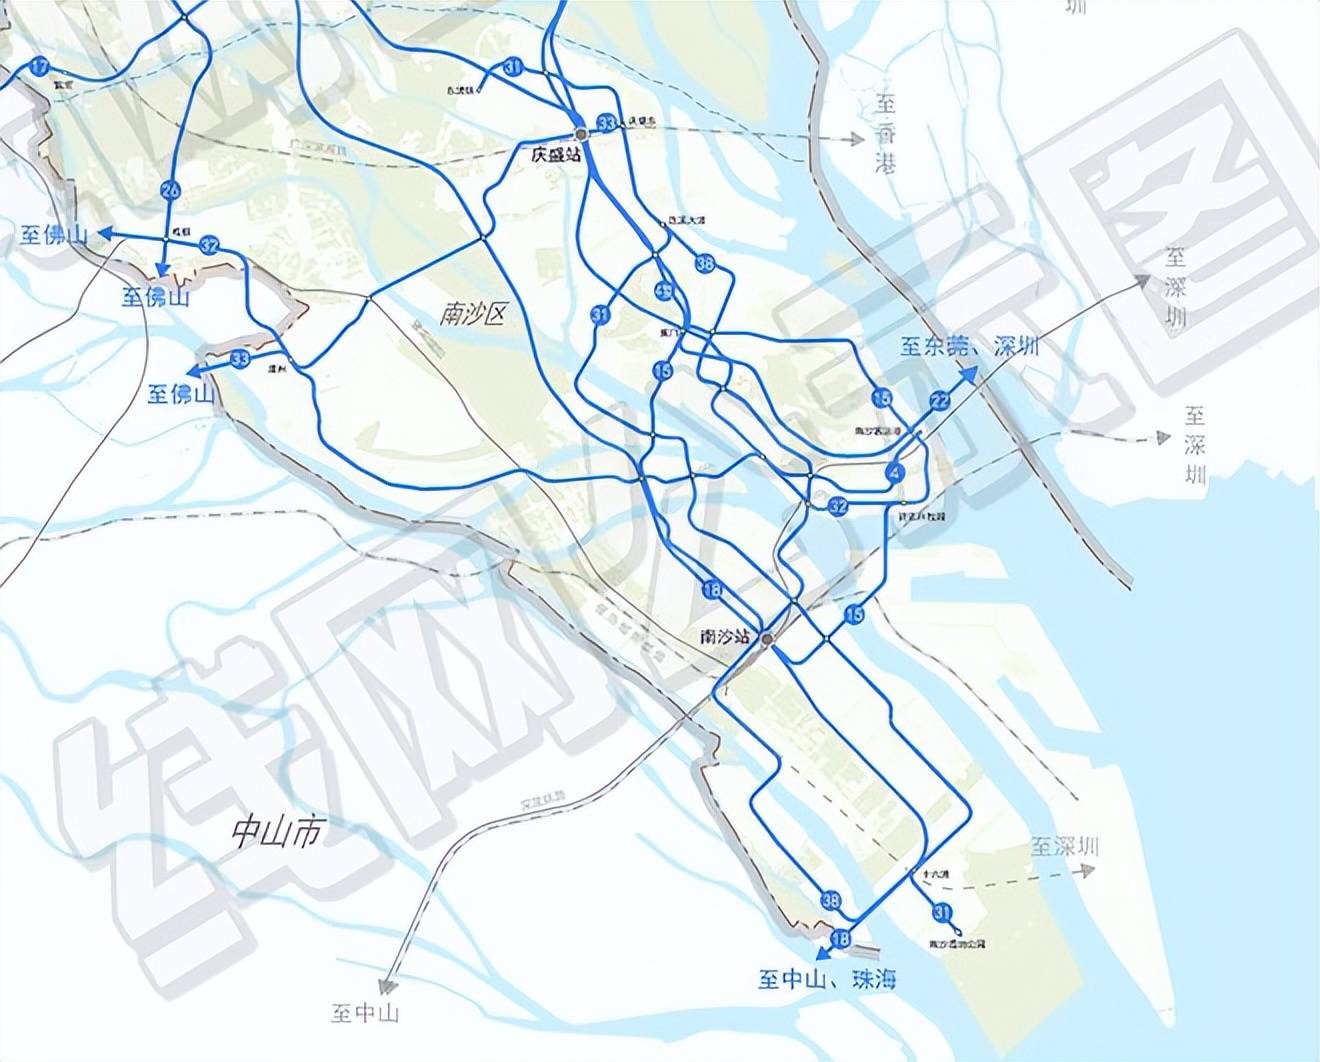 广州将新增30条地铁!2035年的路线图,规划图公示